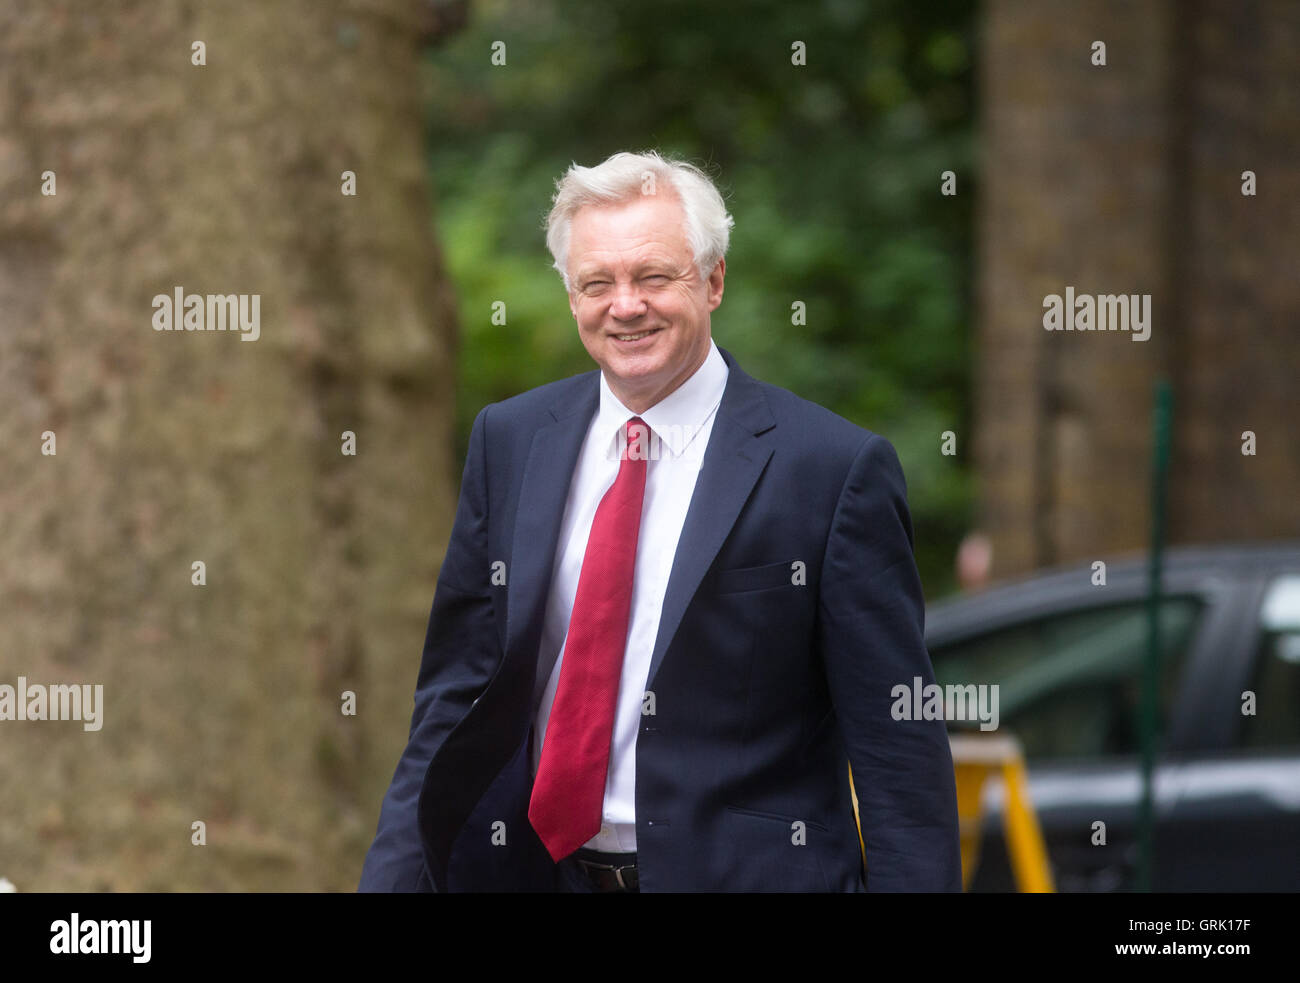 David Davis,il Segretario di Stato per la chiusura dell'Unione europea,arriva per una riunione del gabinetto di Downing Street Foto Stock